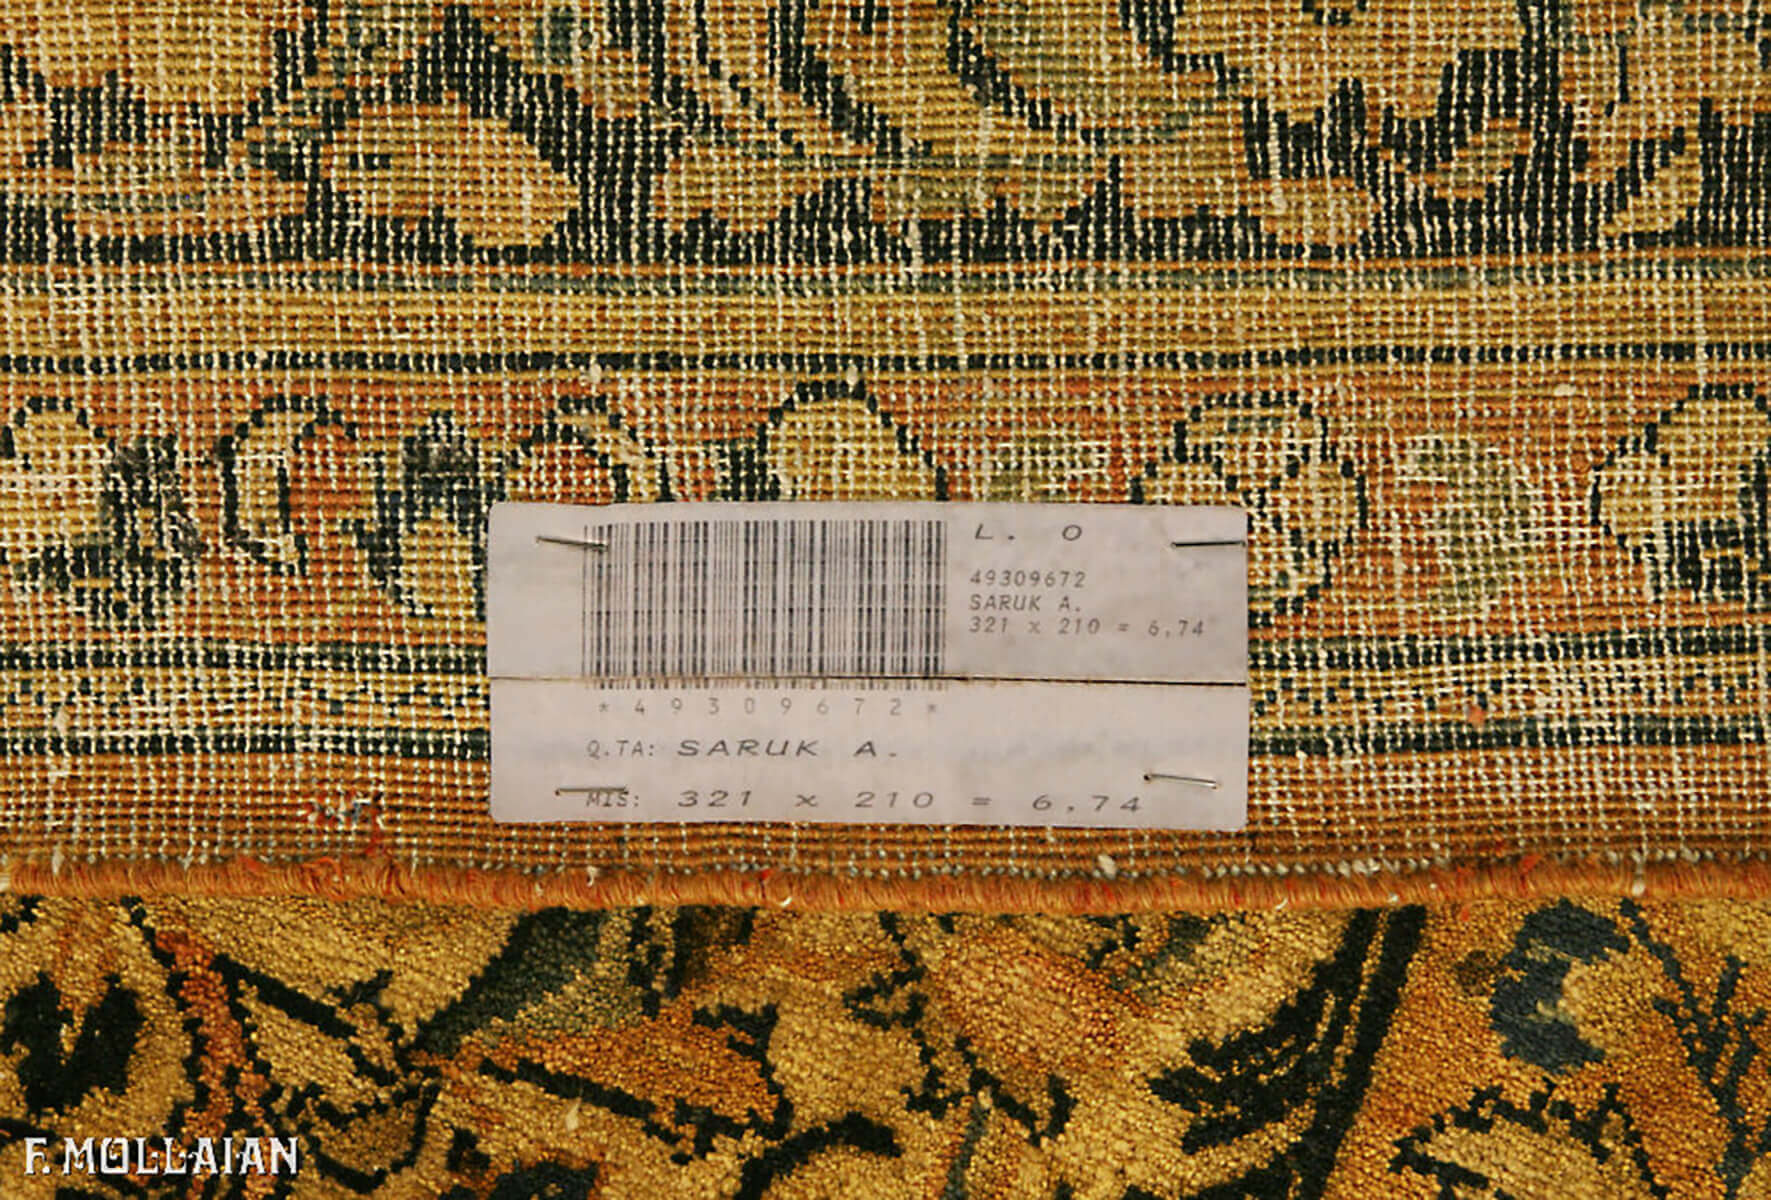 Tappeto Persiano Semi Antico Saruk n°:49309672